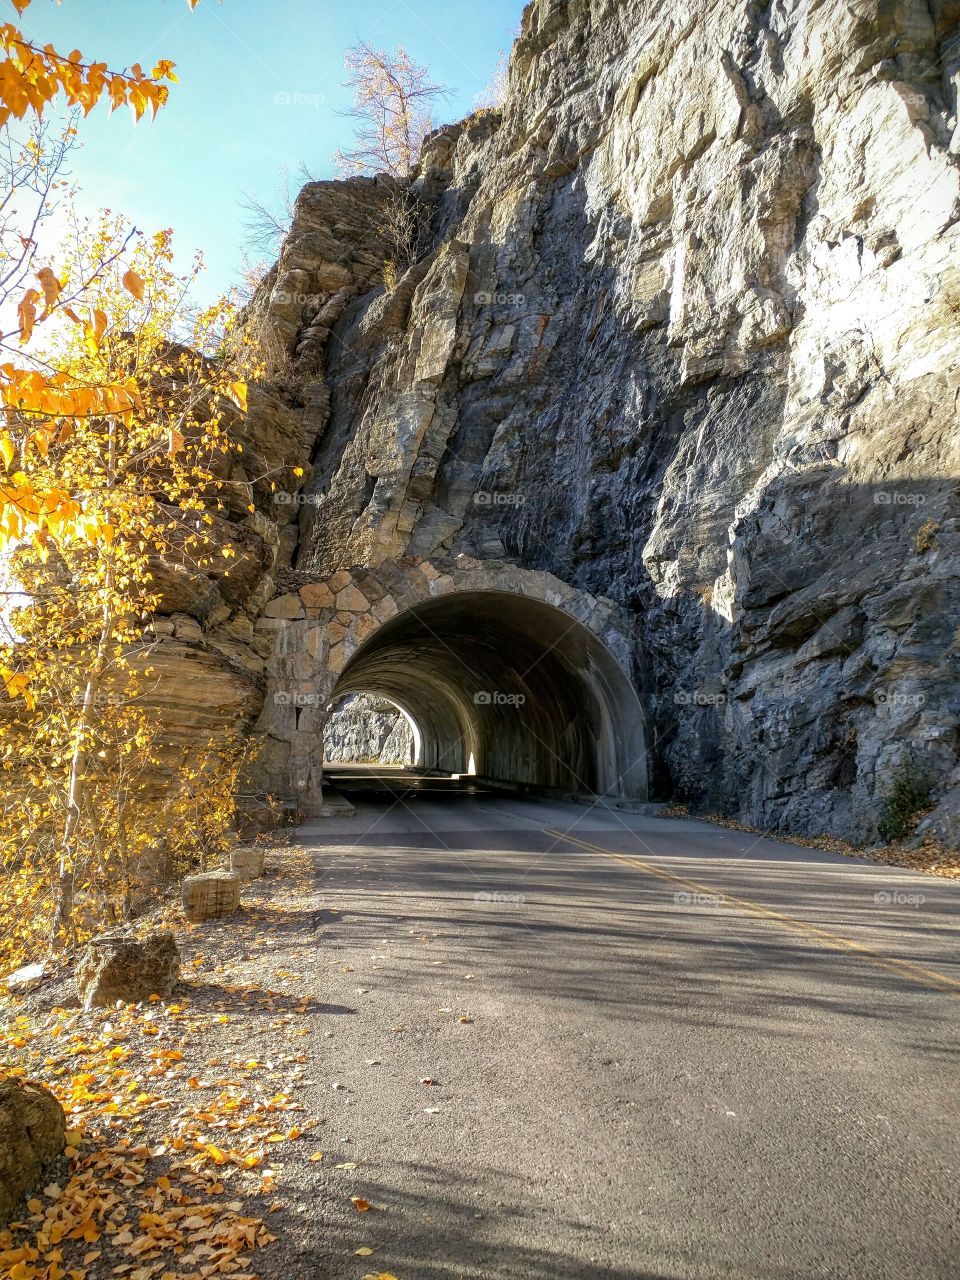 Tunnel at Glacier National Park, MT